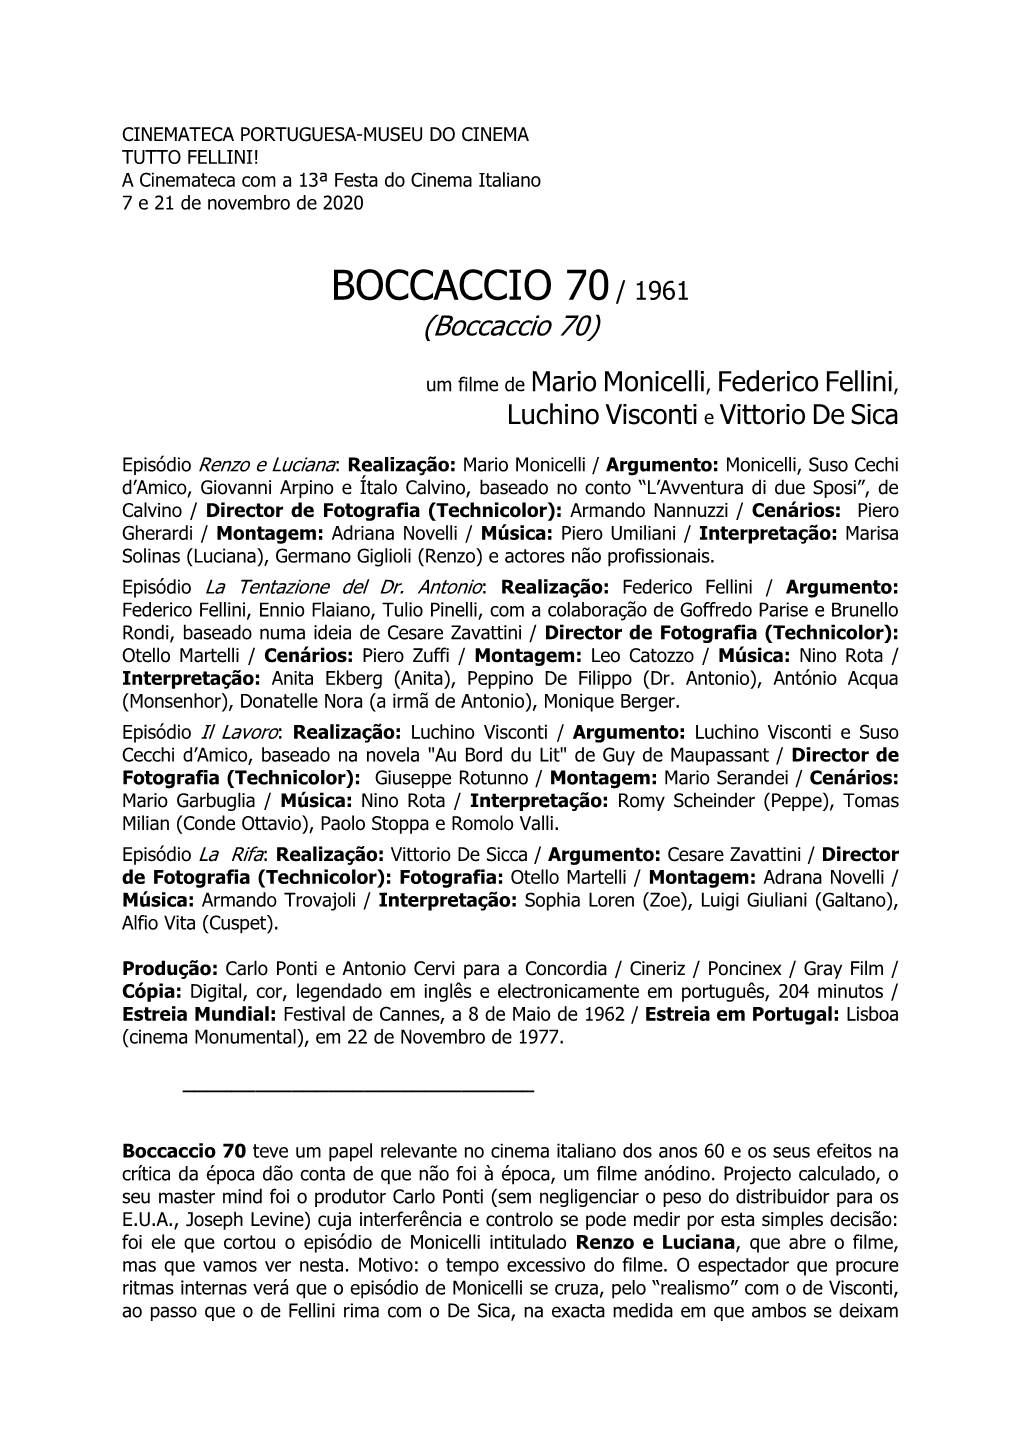 BOCCACCIO 70 / 1961 (Boccaccio 70)